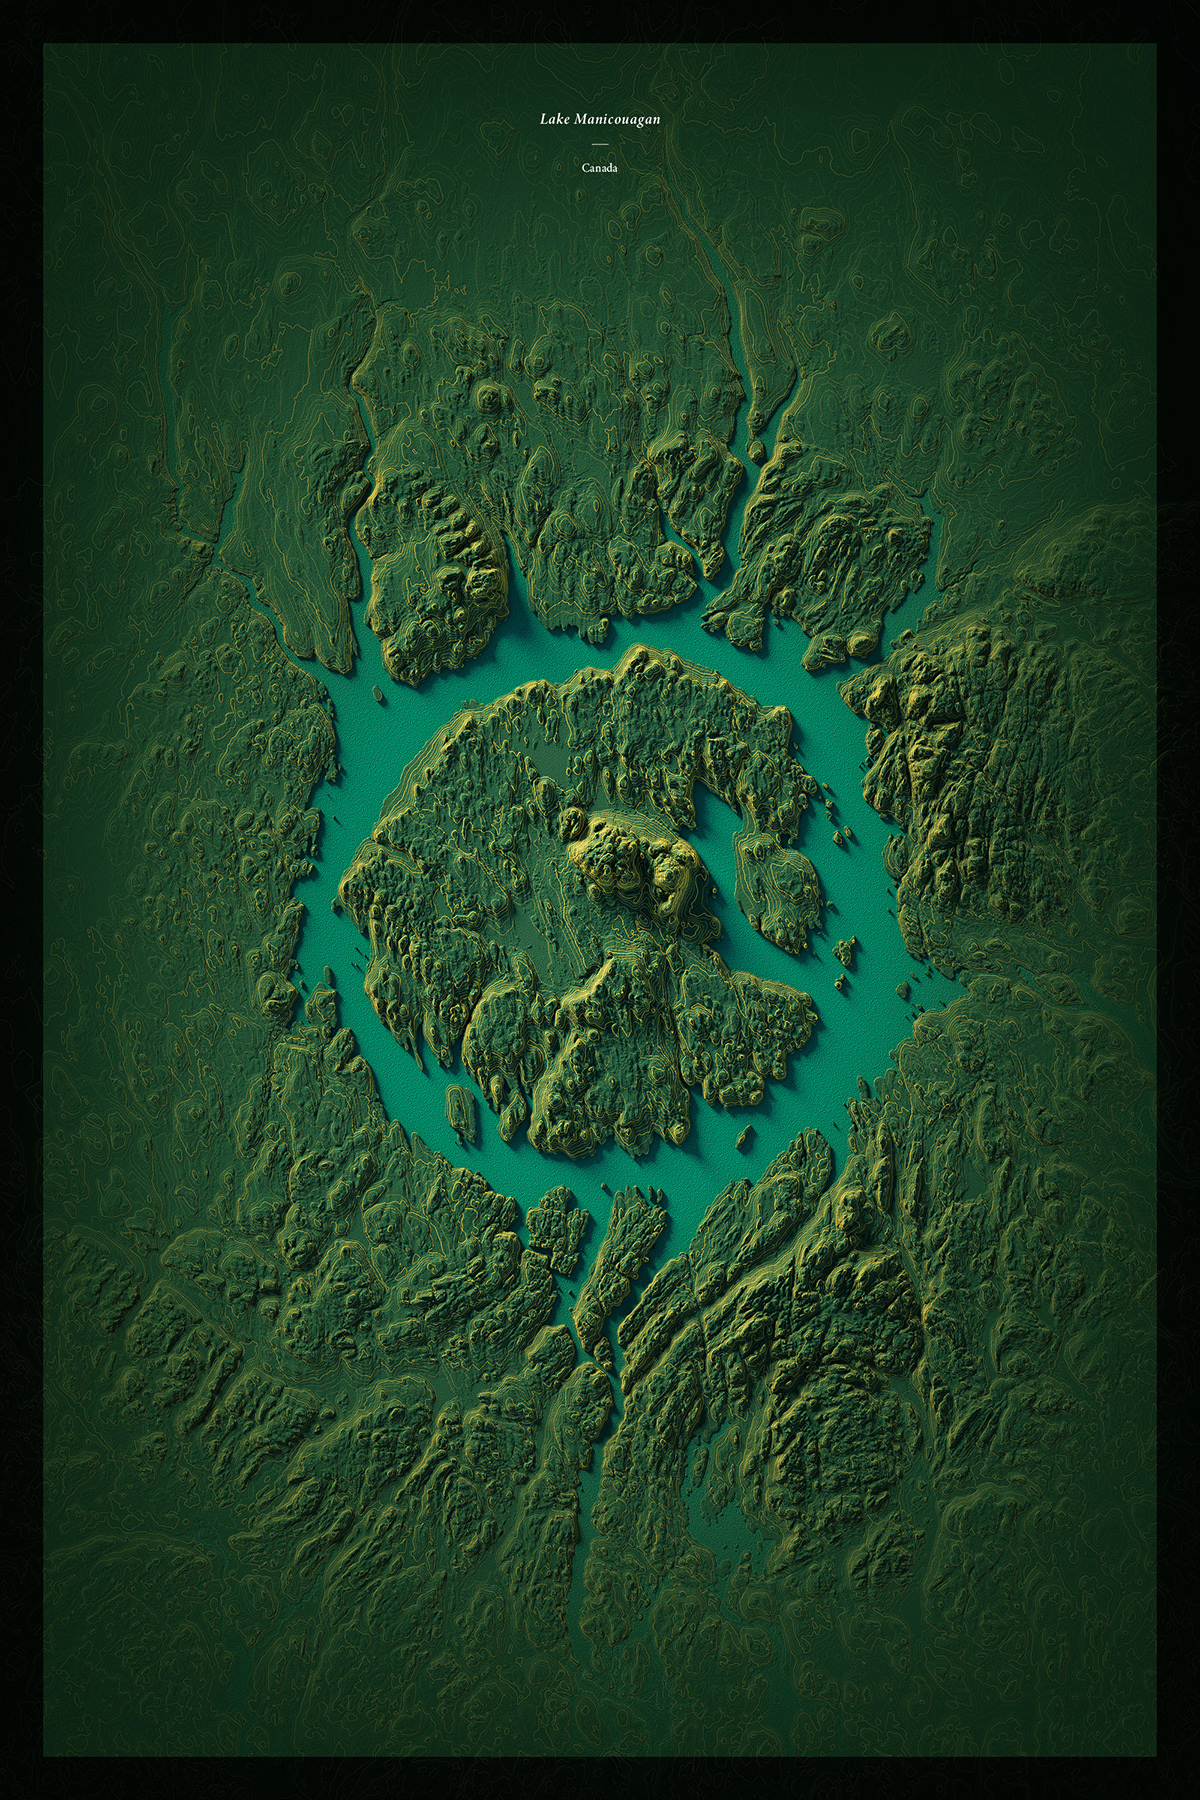 Cartographic map (data visualization) of lake Manicouagan. Tools: Blender, Photoshop, Illustrator